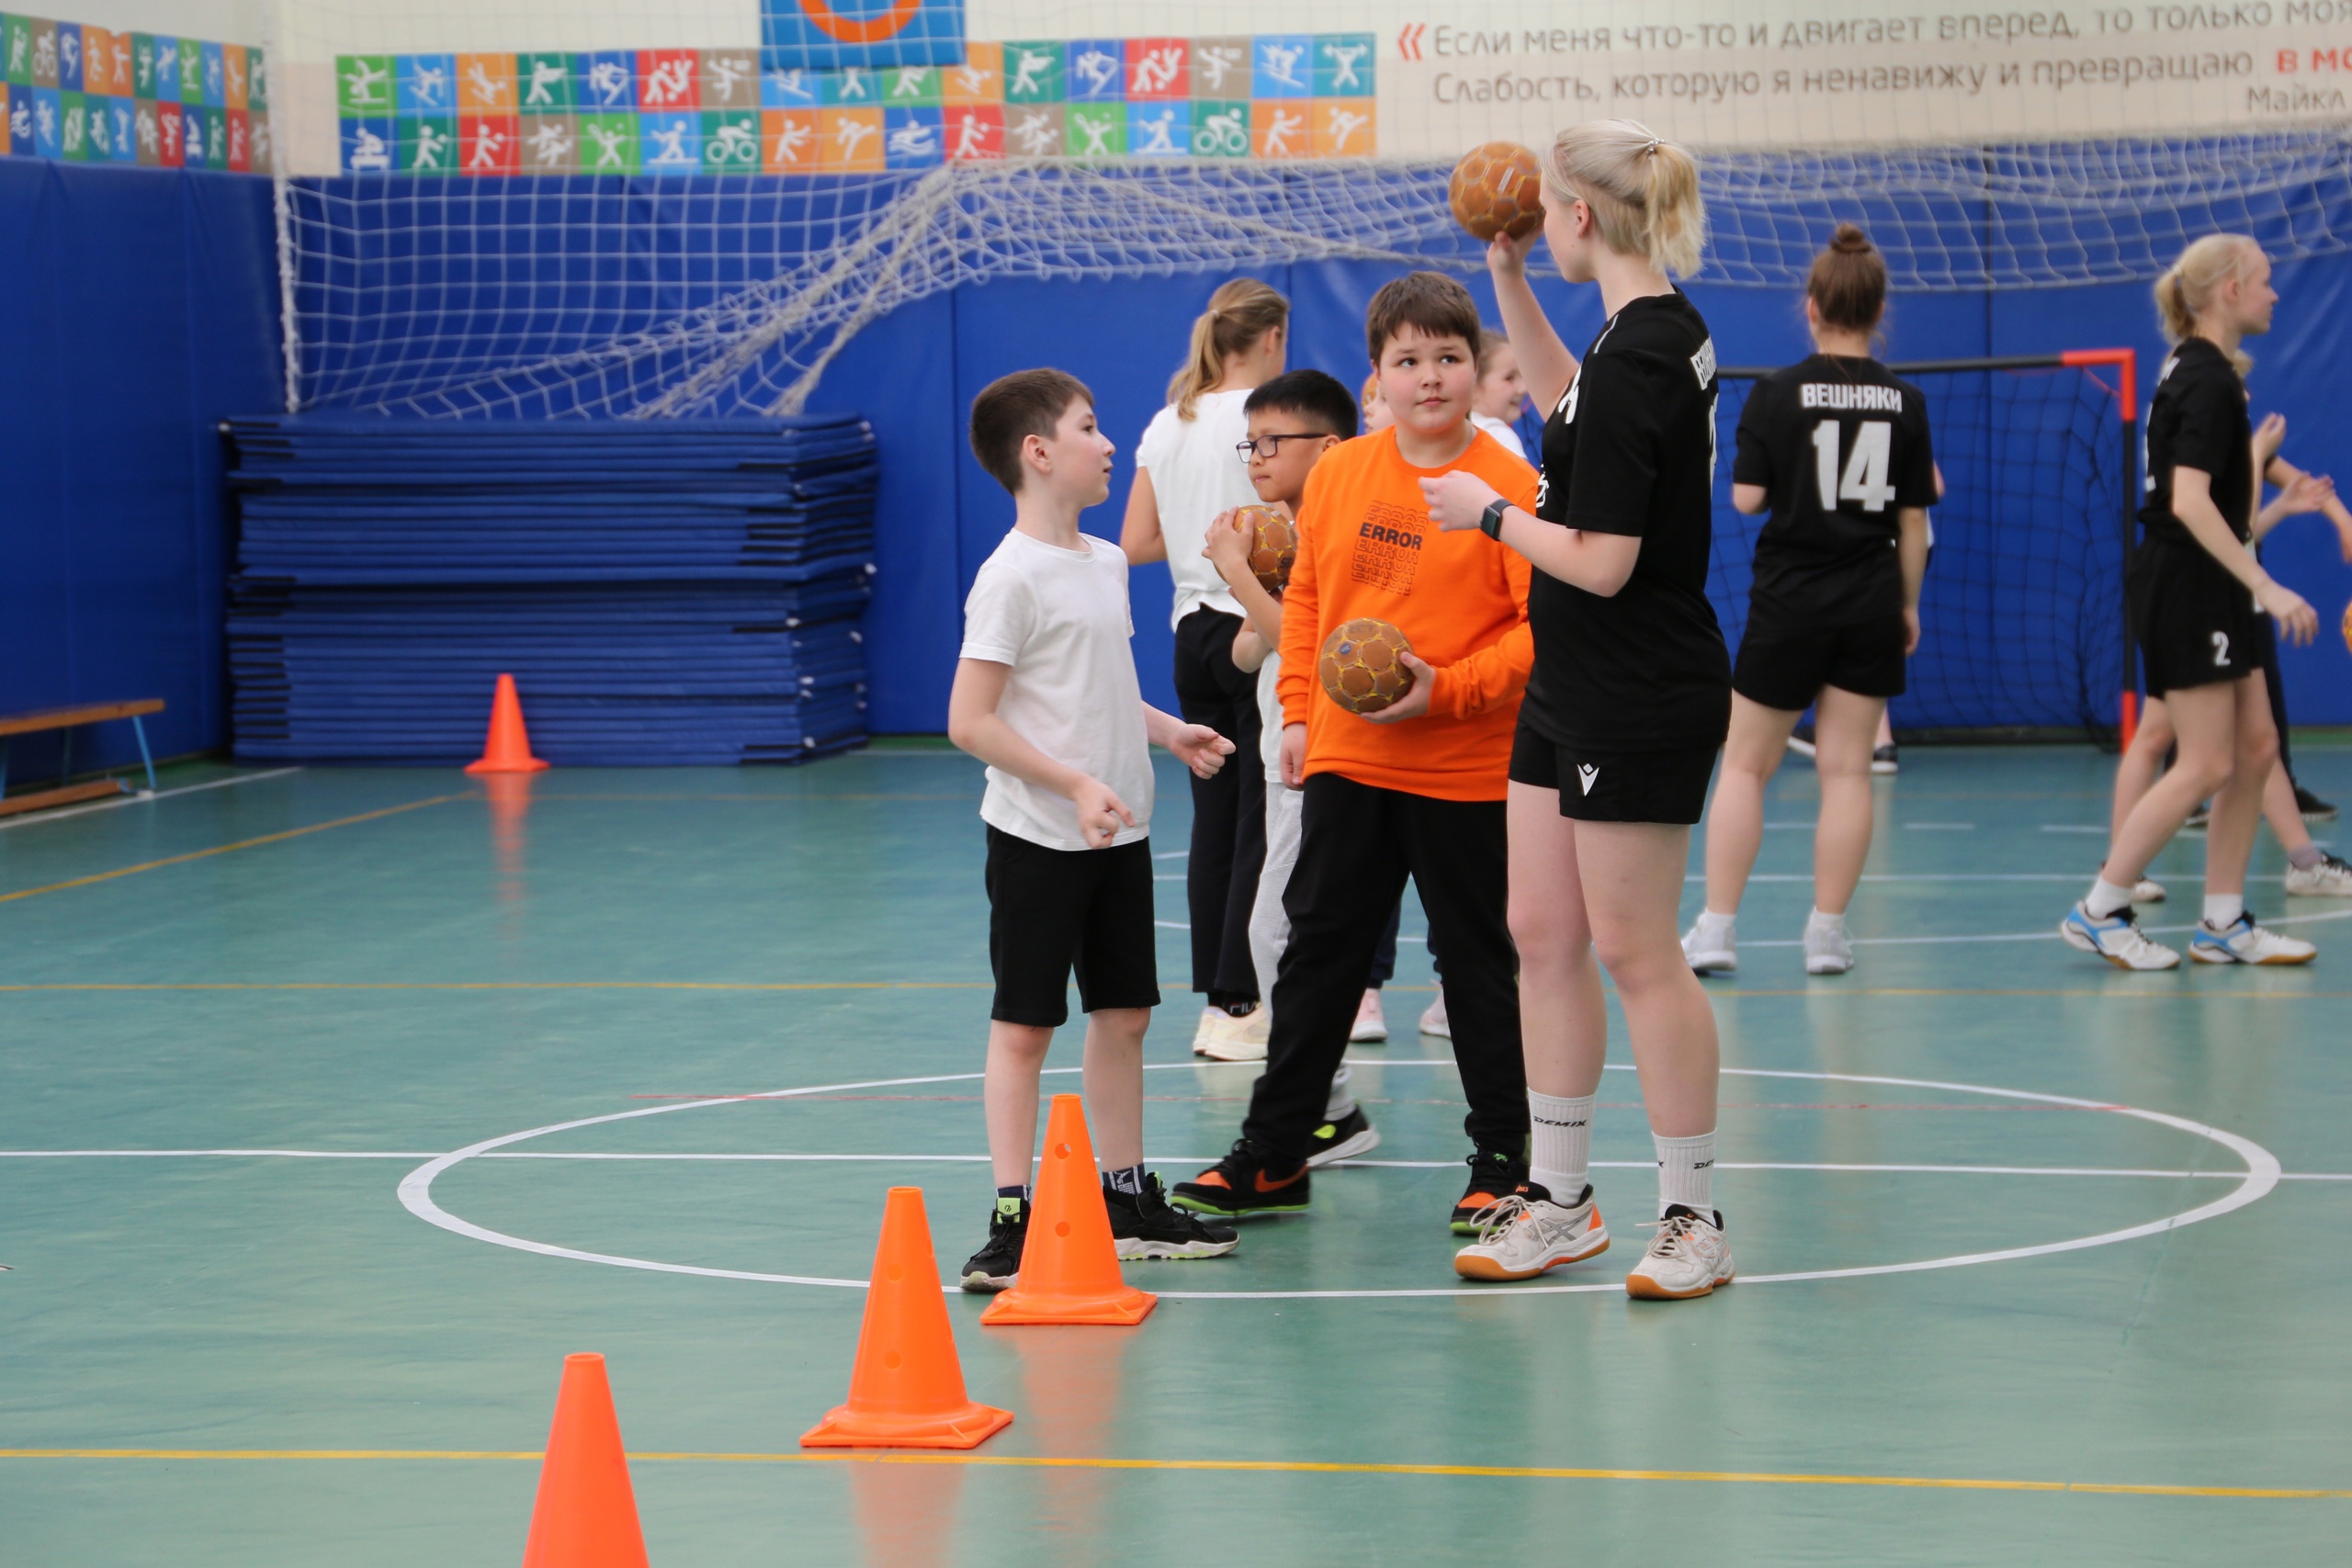 Гандбол, фитнес-аэробика, северная ходьба: с какими видами спорта познакомились московские школьники на этой неделе